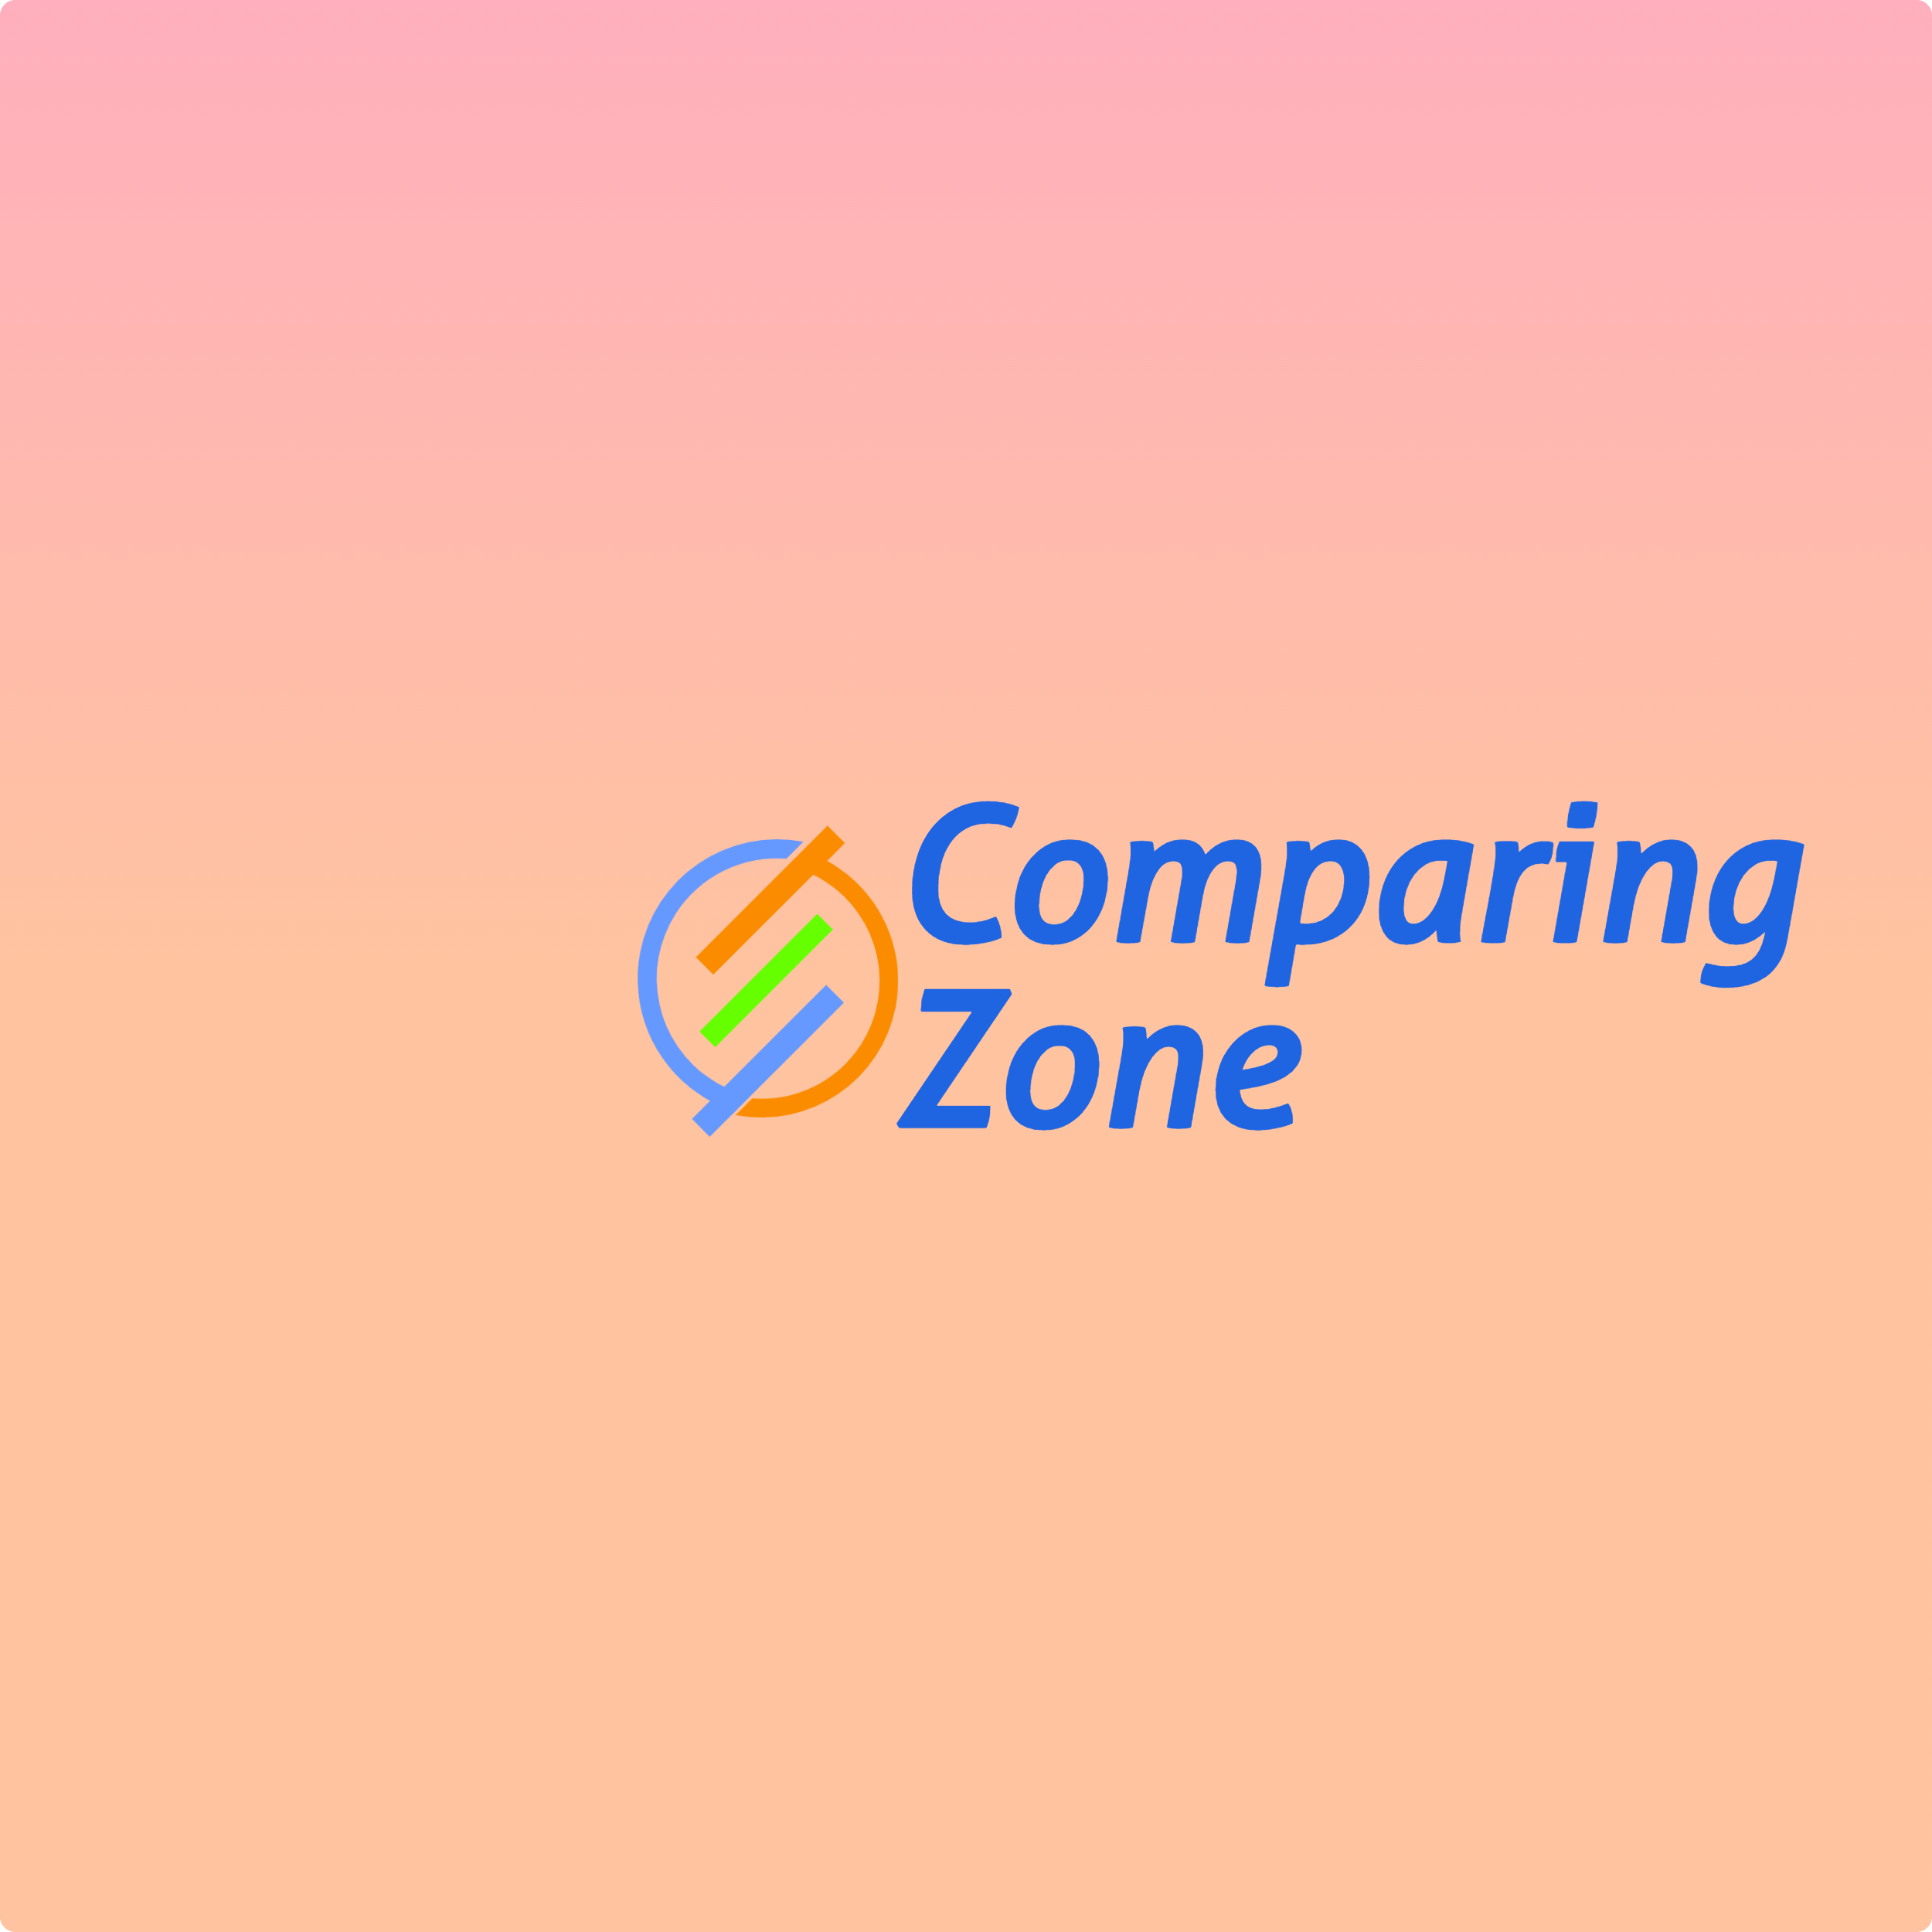 Comparing zone